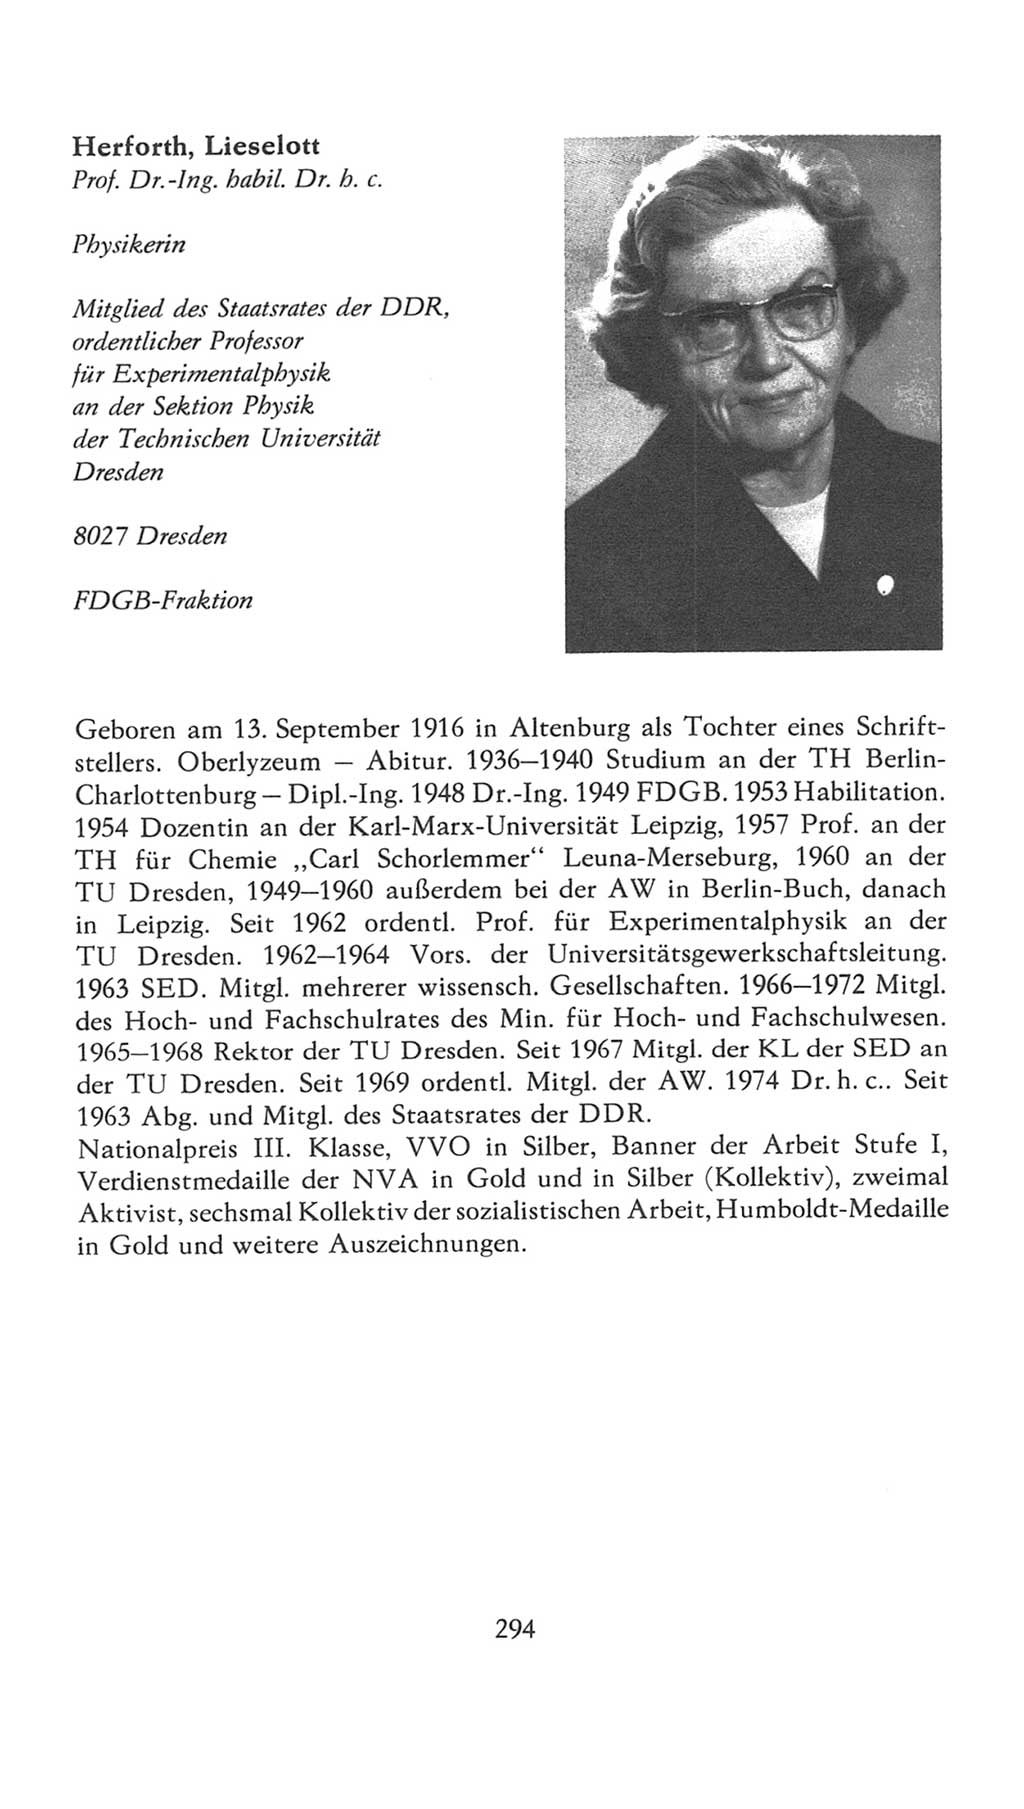 Volkskammer (VK) der Deutschen Demokratischen Republik (DDR), 7. Wahlperiode 1976-1981, Seite 294 (VK. DDR 7. WP. 1976-1981, S. 294)